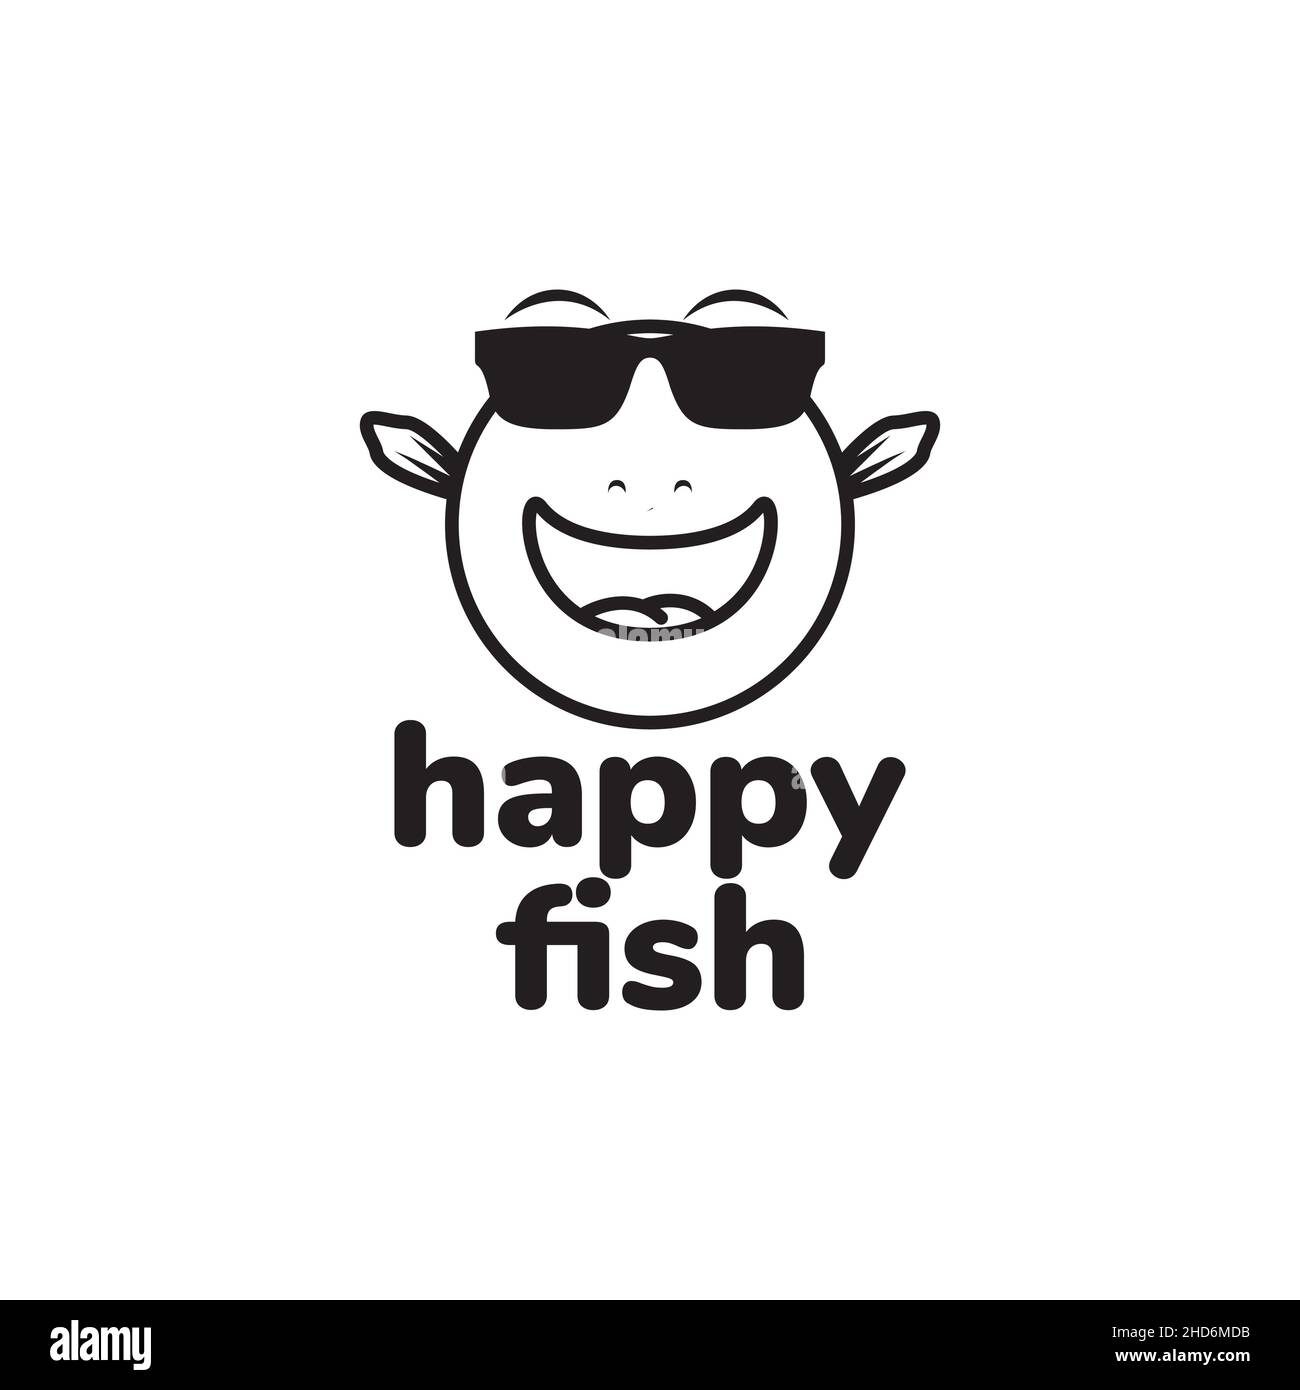 Puffers fish with sunglasses logo design vector graphic symbol icon illustration creative idea Stock Vector